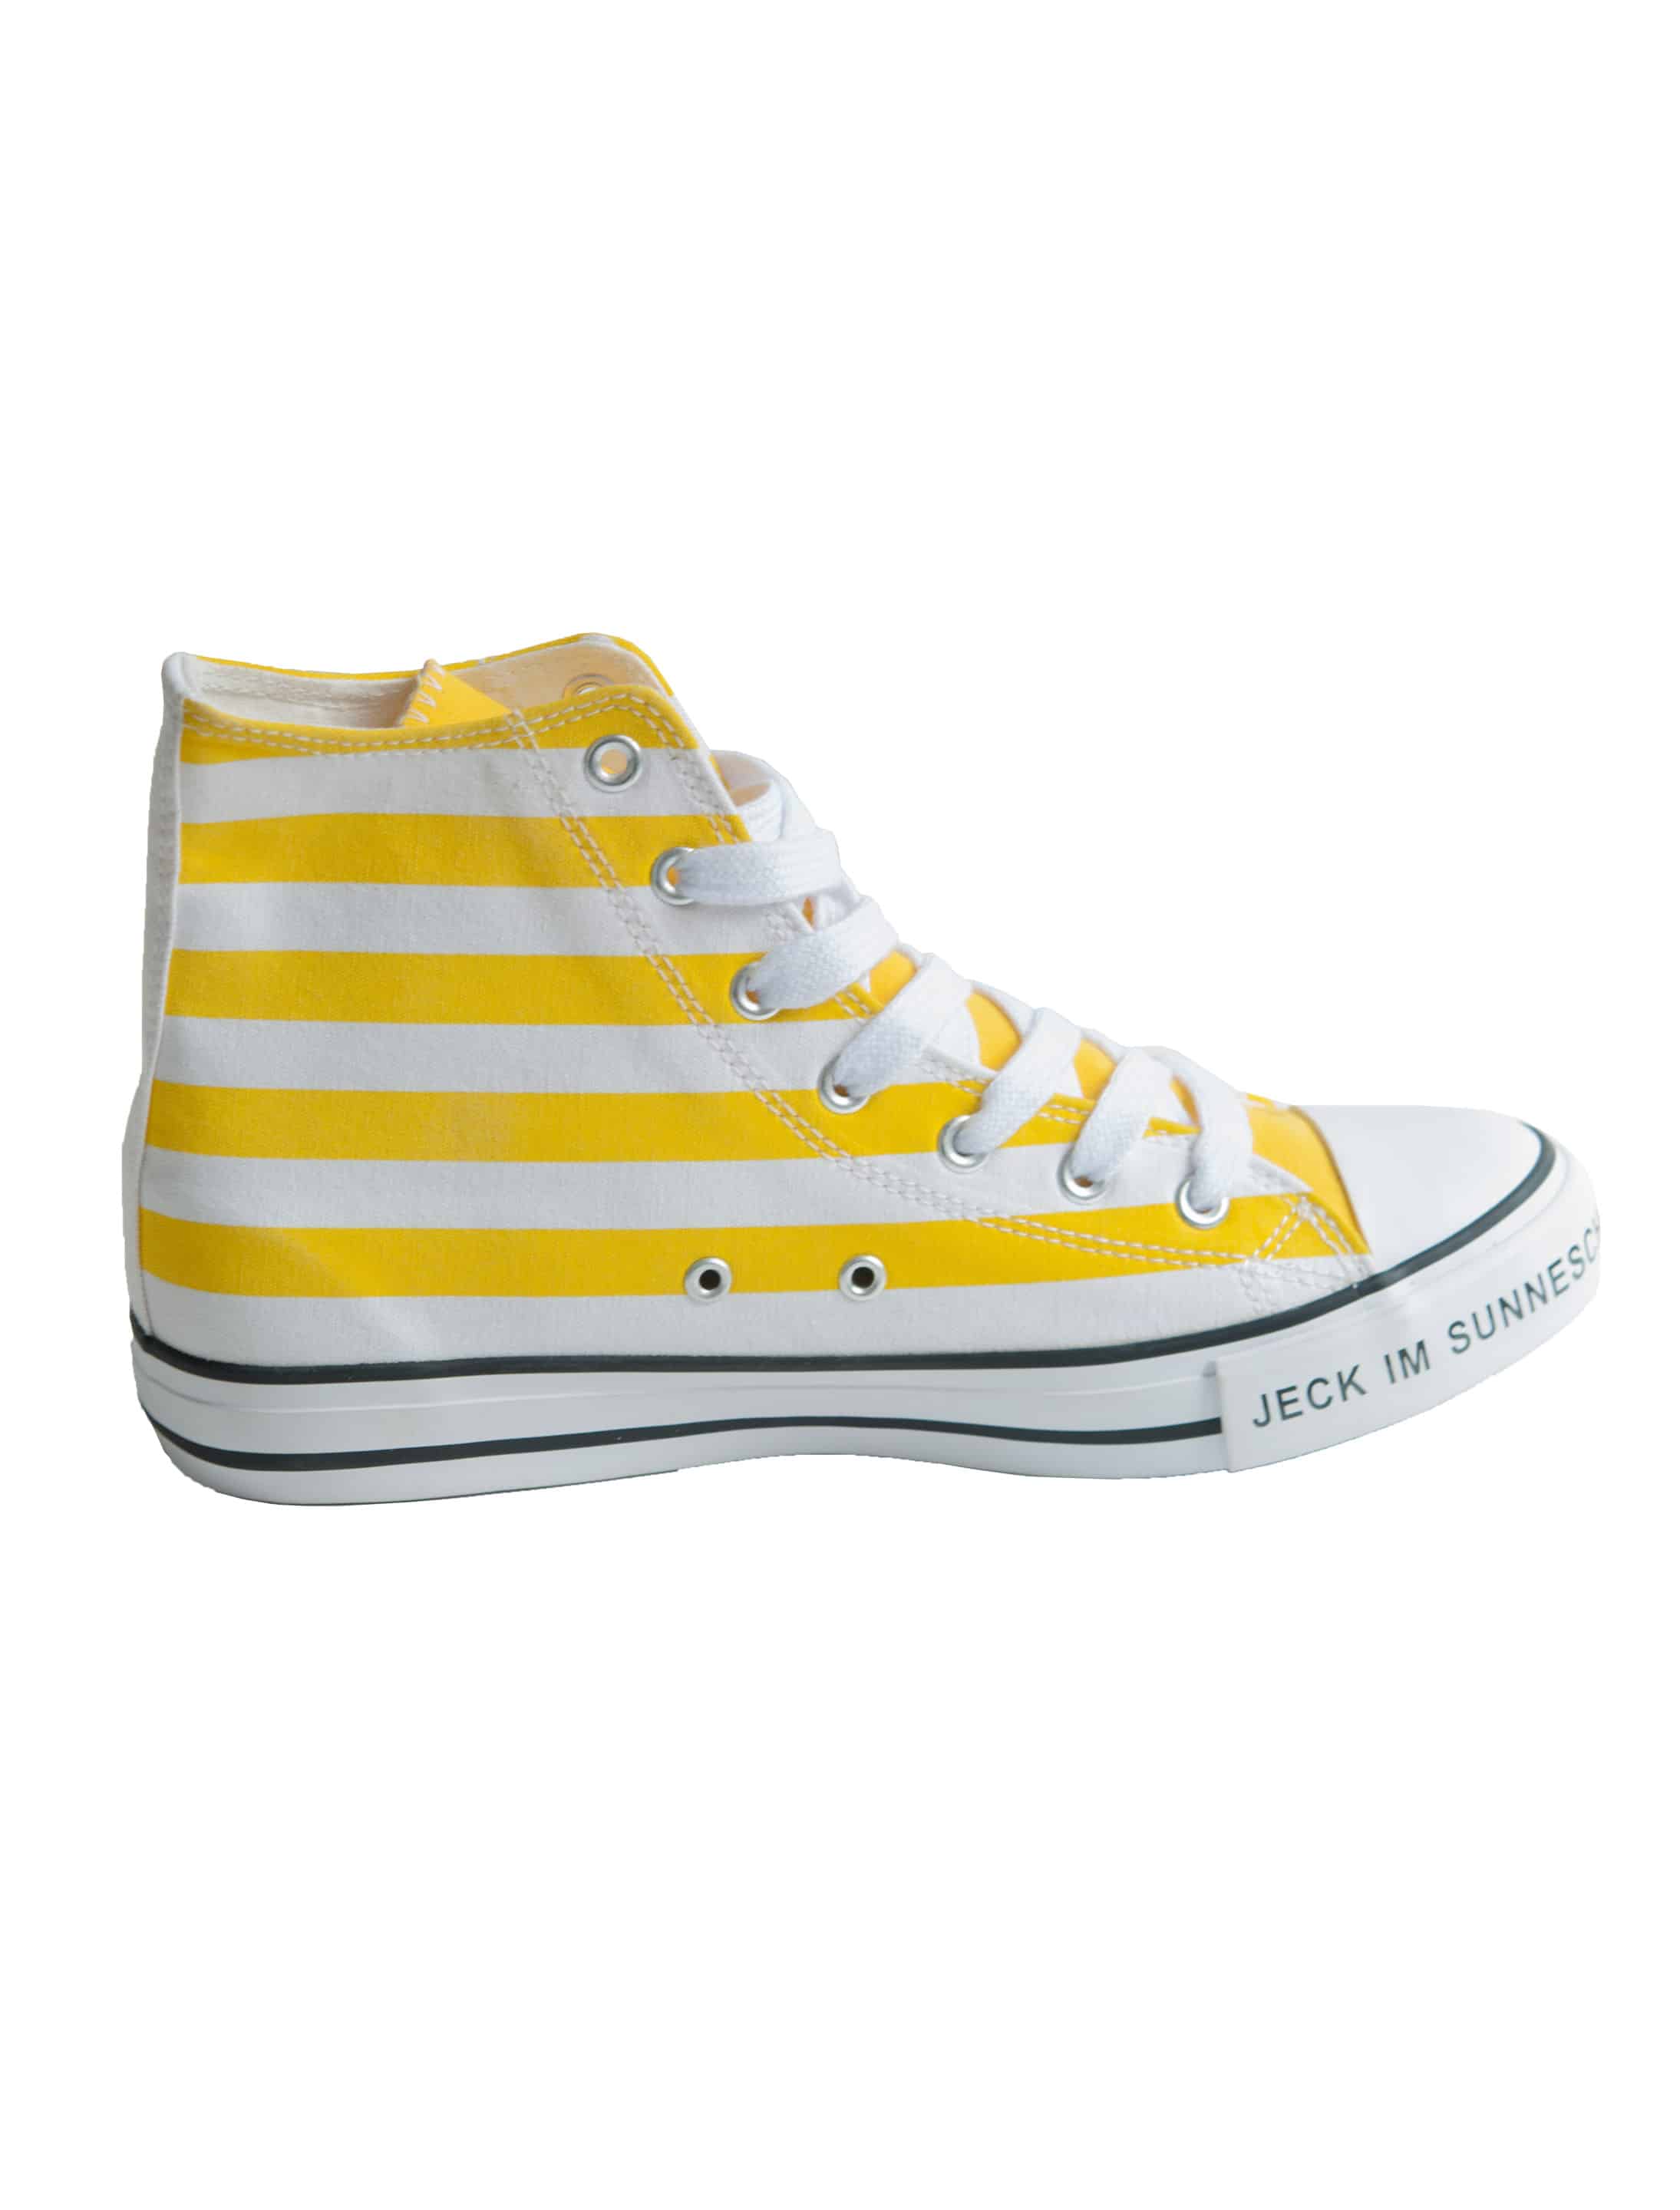 Schuhe Jeck im Sunnesching gelb 40